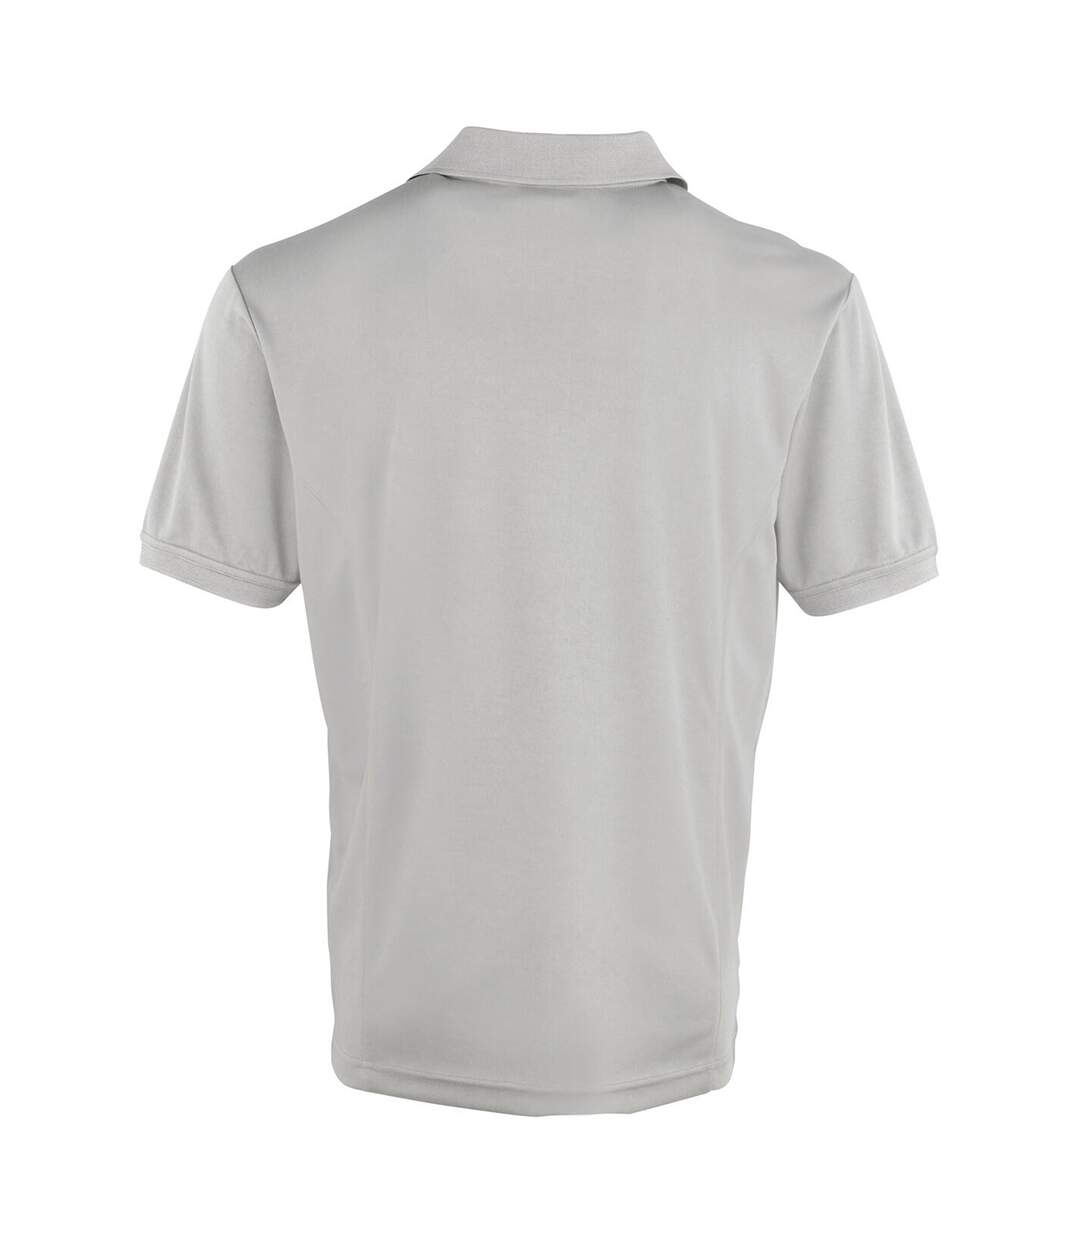 Premier Mens Coolchecker Pique Short Sleeve Polo T-Shirt (Silver)